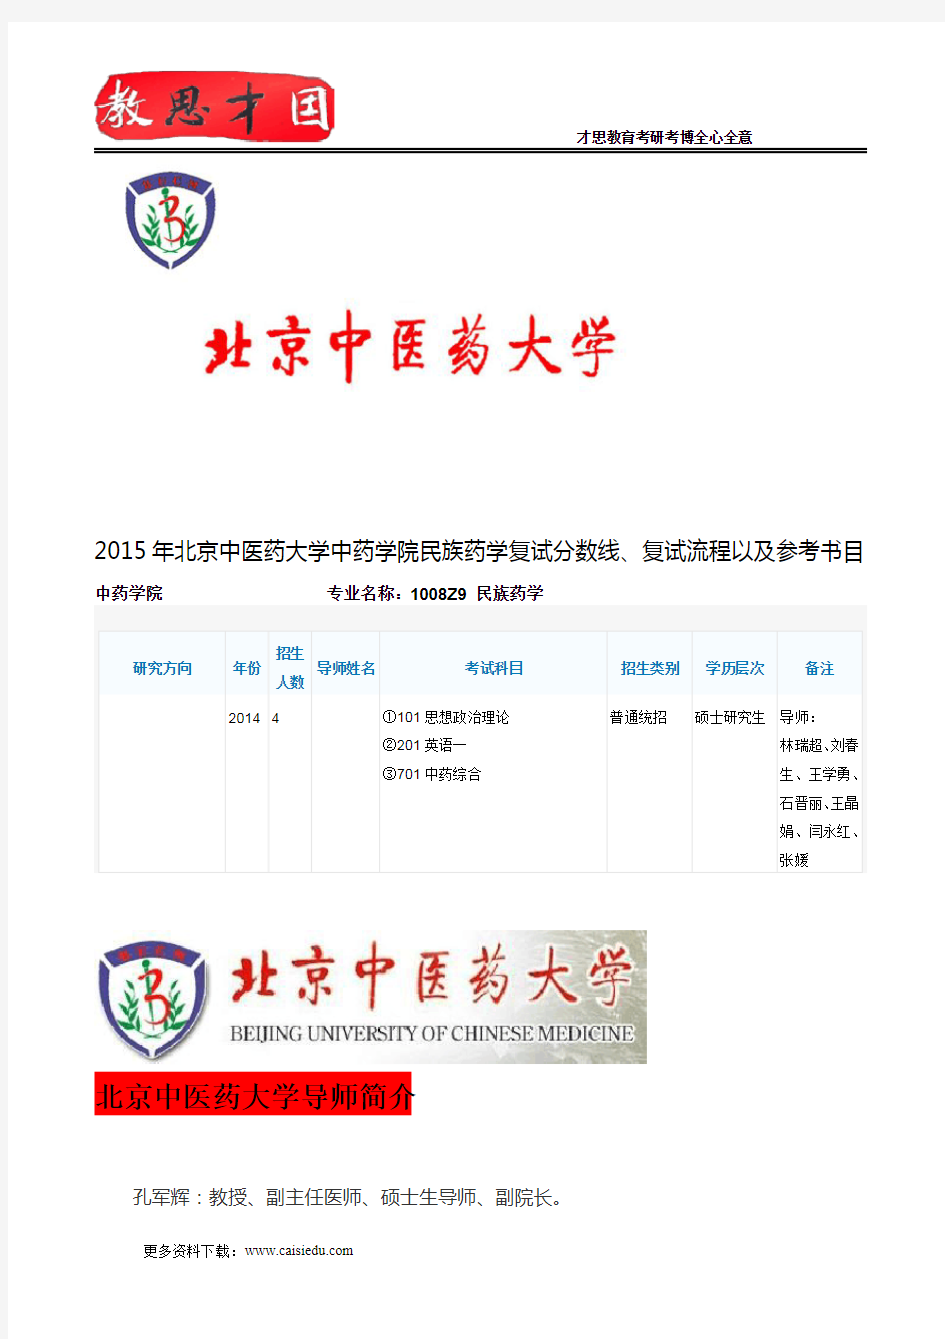 2015年北京中医药大学中药学院民族药学复试分数线、复试流程以及参考书目